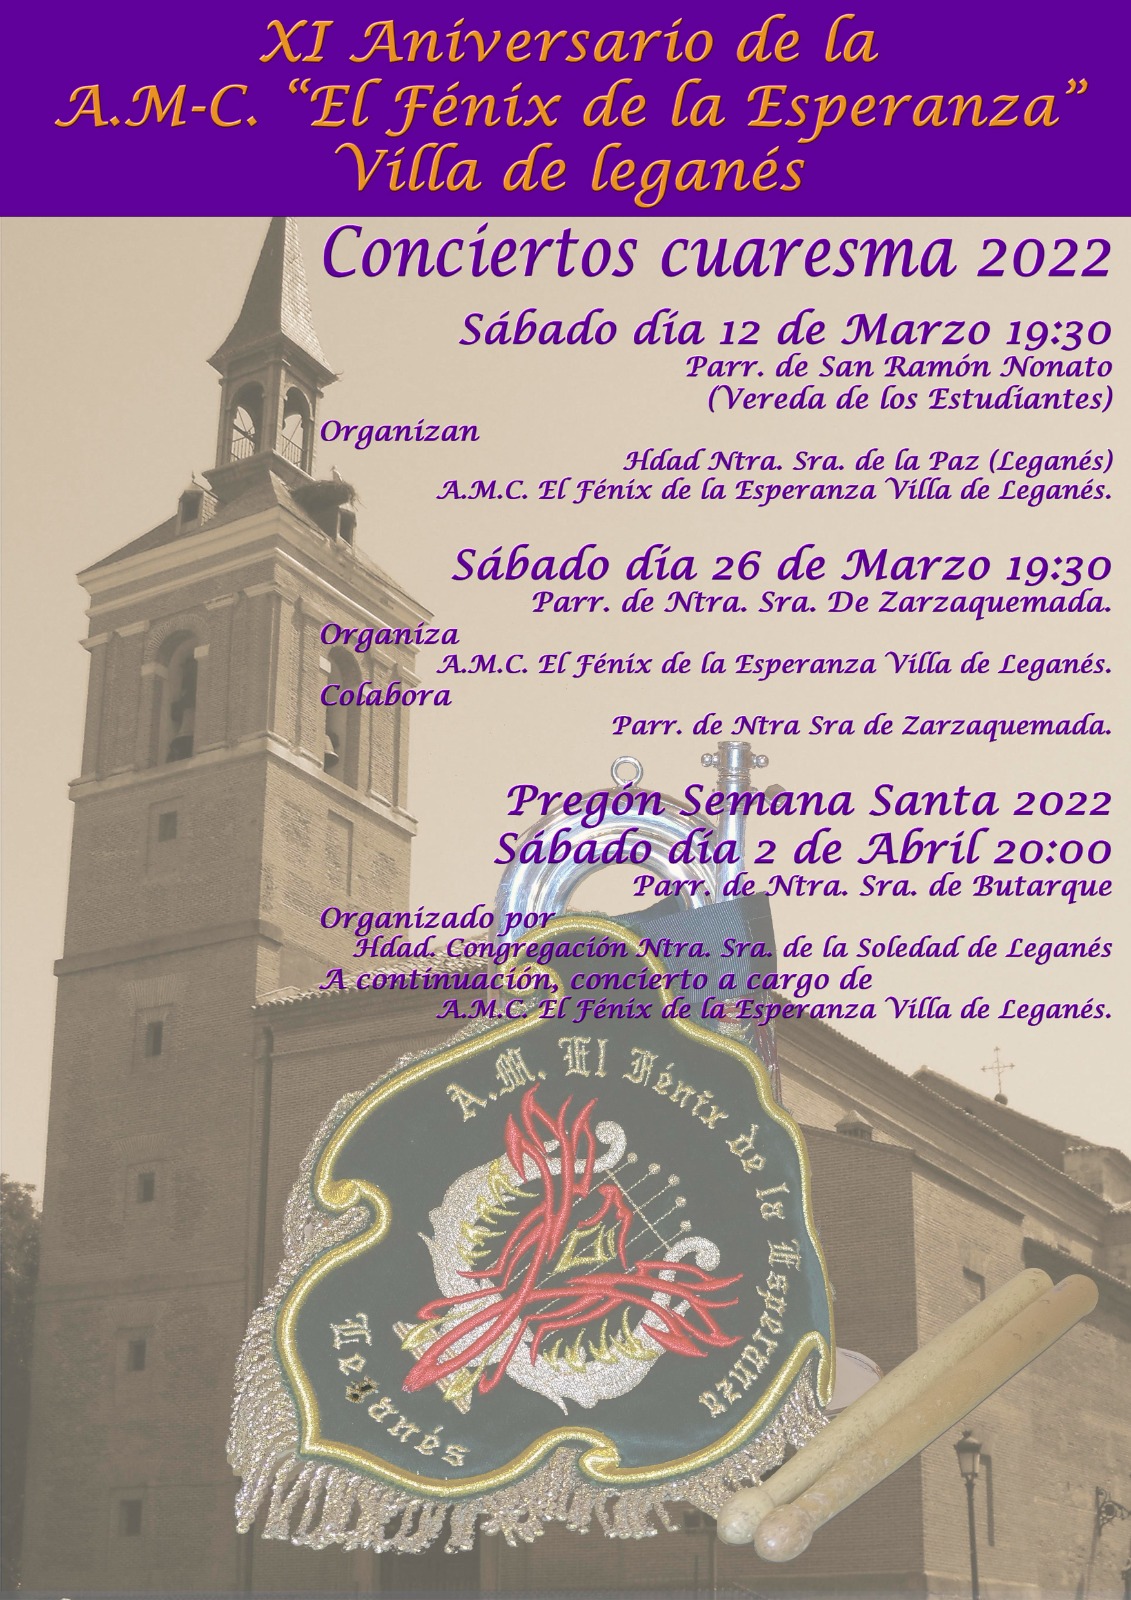 concierto cuaresma 2022